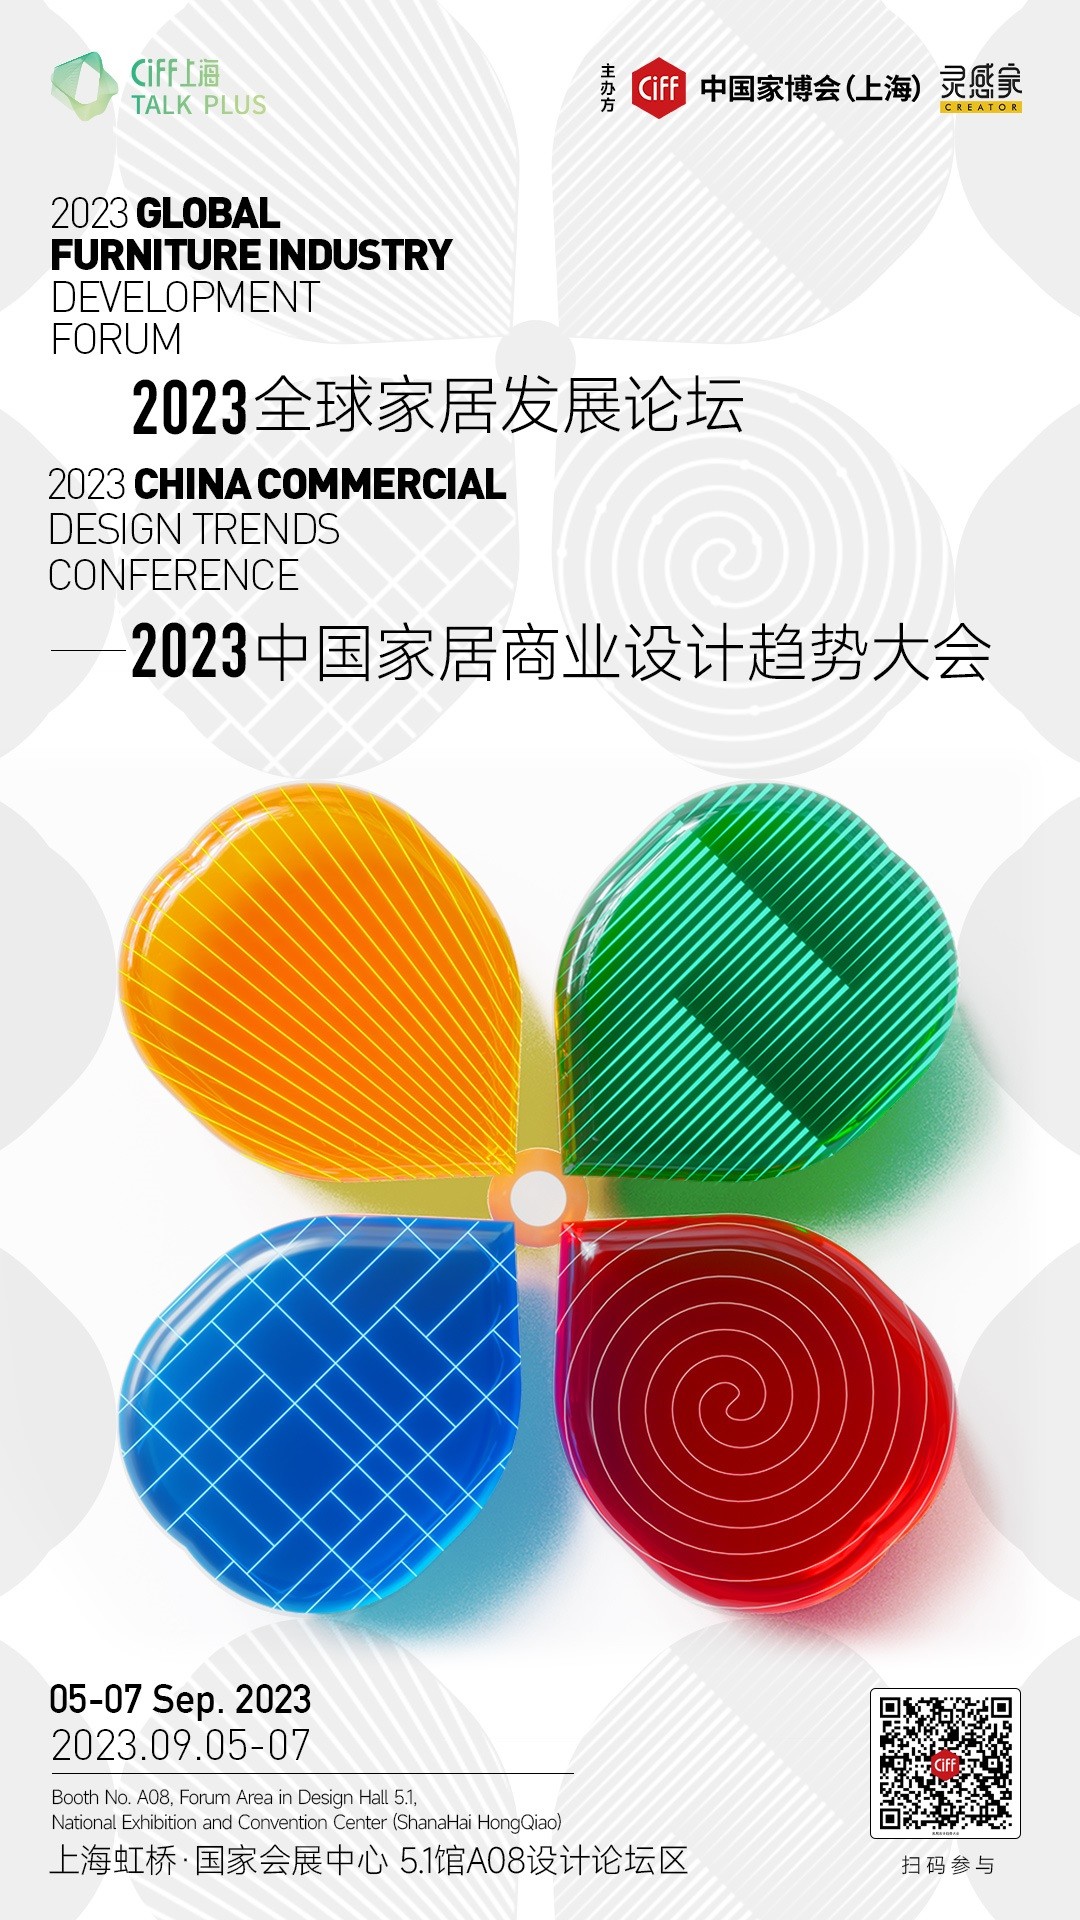 「2023全球家居发展论坛 - 中国家居商业设计趋势大会」将于2023年9月5-7日,在第52届中国家博会(上海)开展期间,落地上海虹桥·国家会展中心。本届大会...